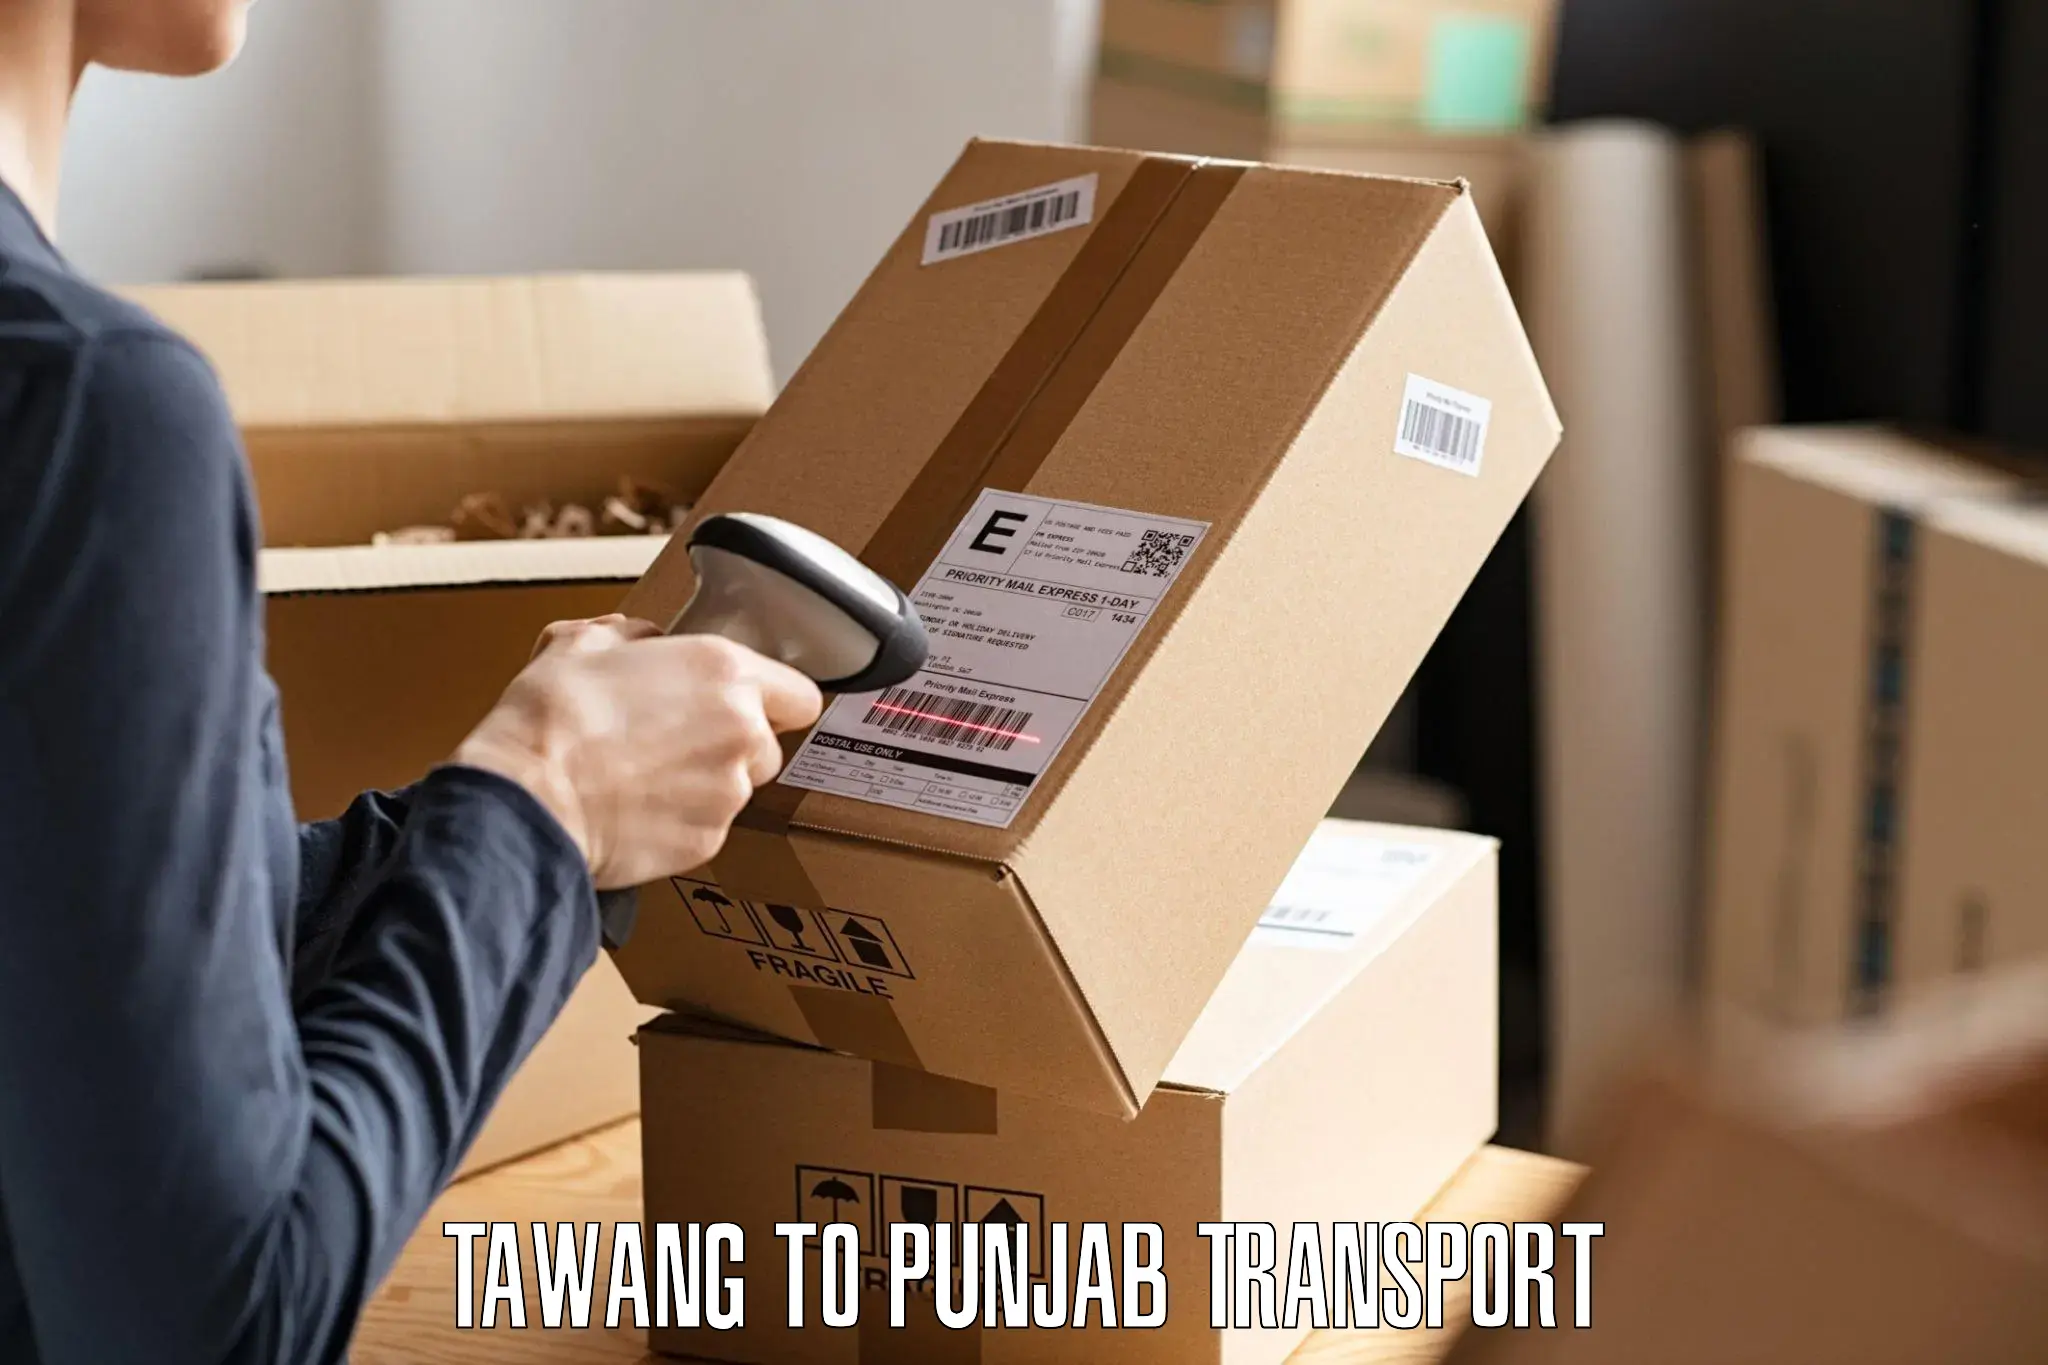 Online transport service Tawang to Zirakpur